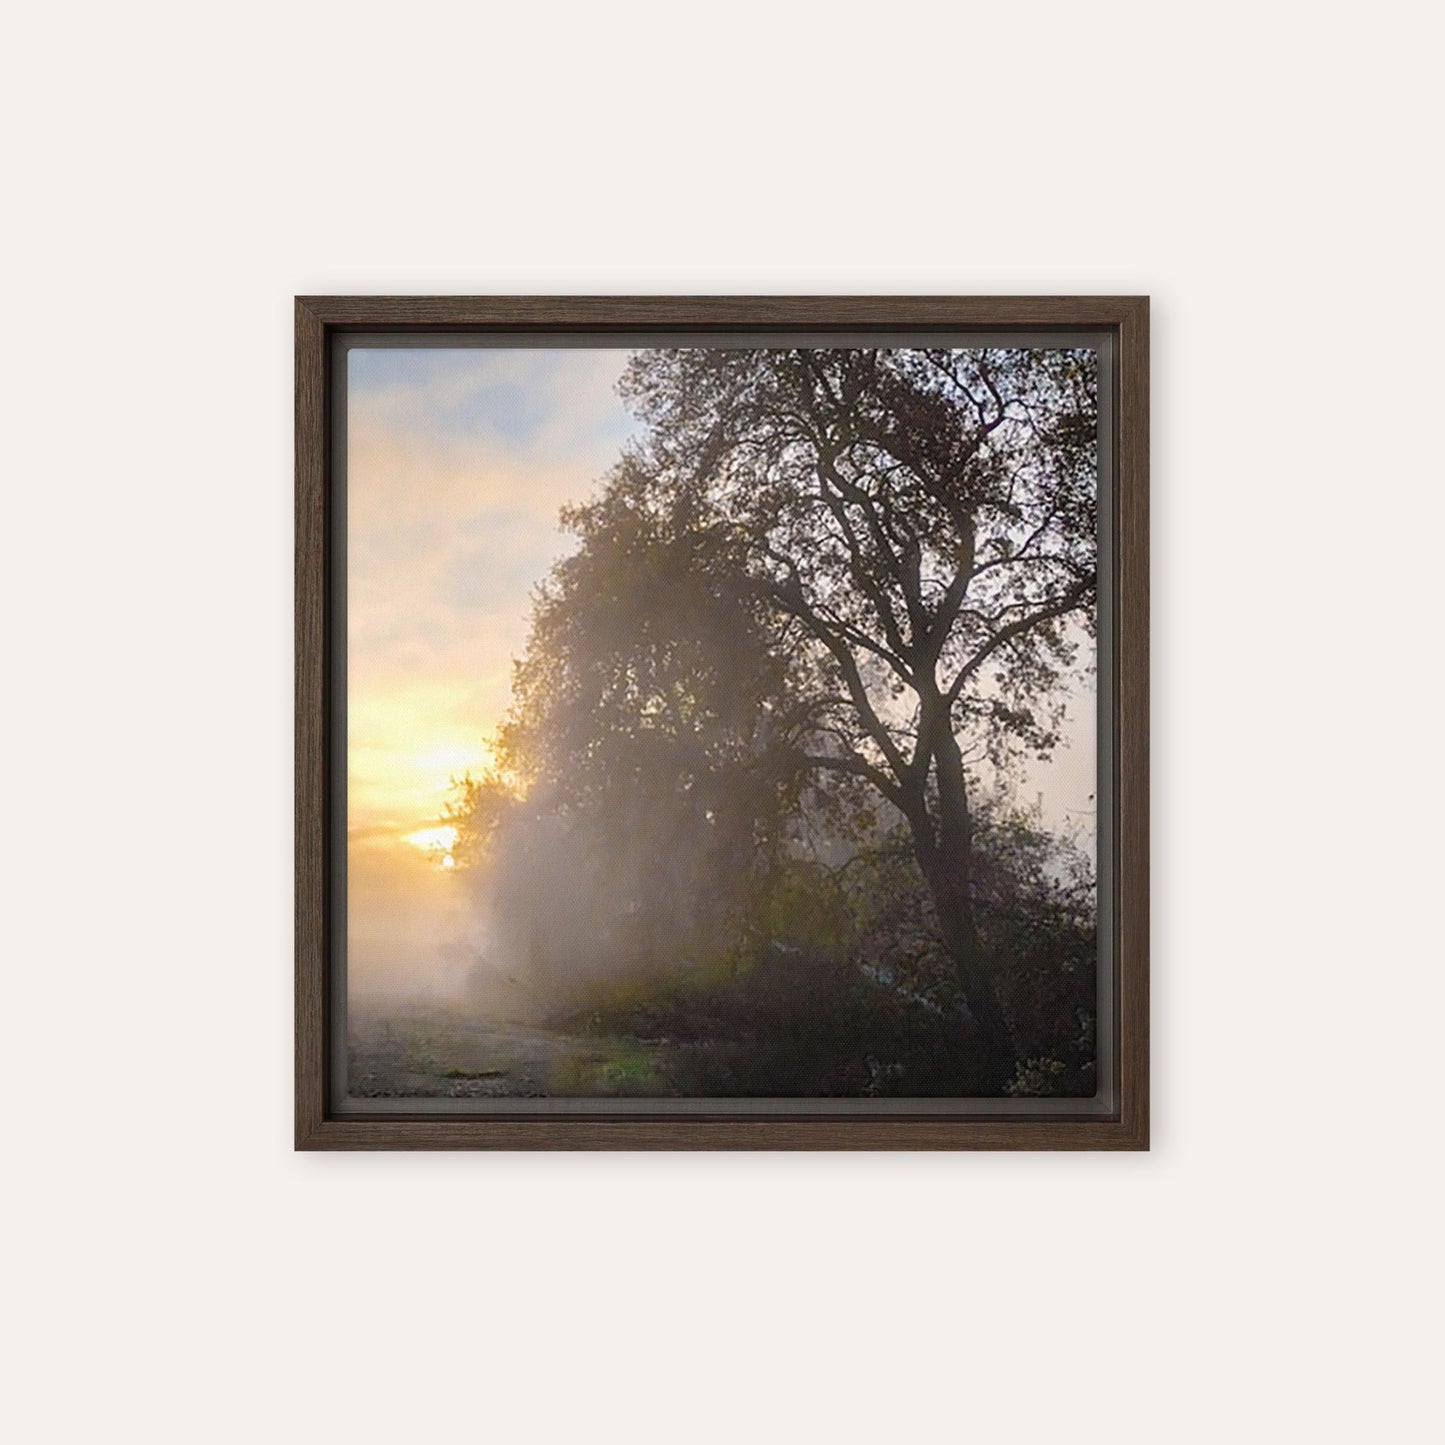 The Rising Sun Framed Print